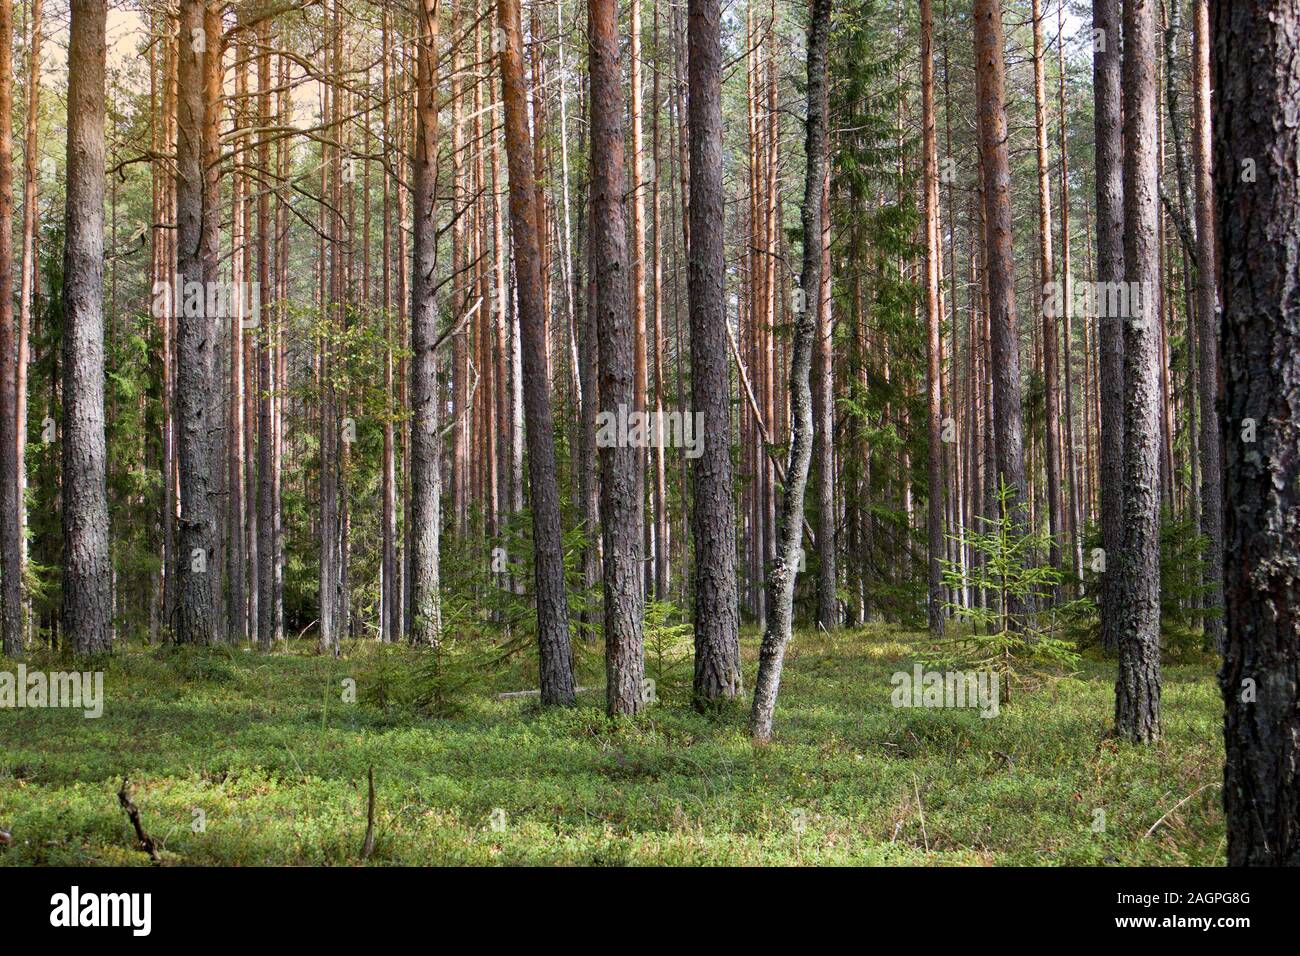 Recta de troncos de pino barco bosque de pinos y alfombra de hierba y musgo debajo Foto de stock